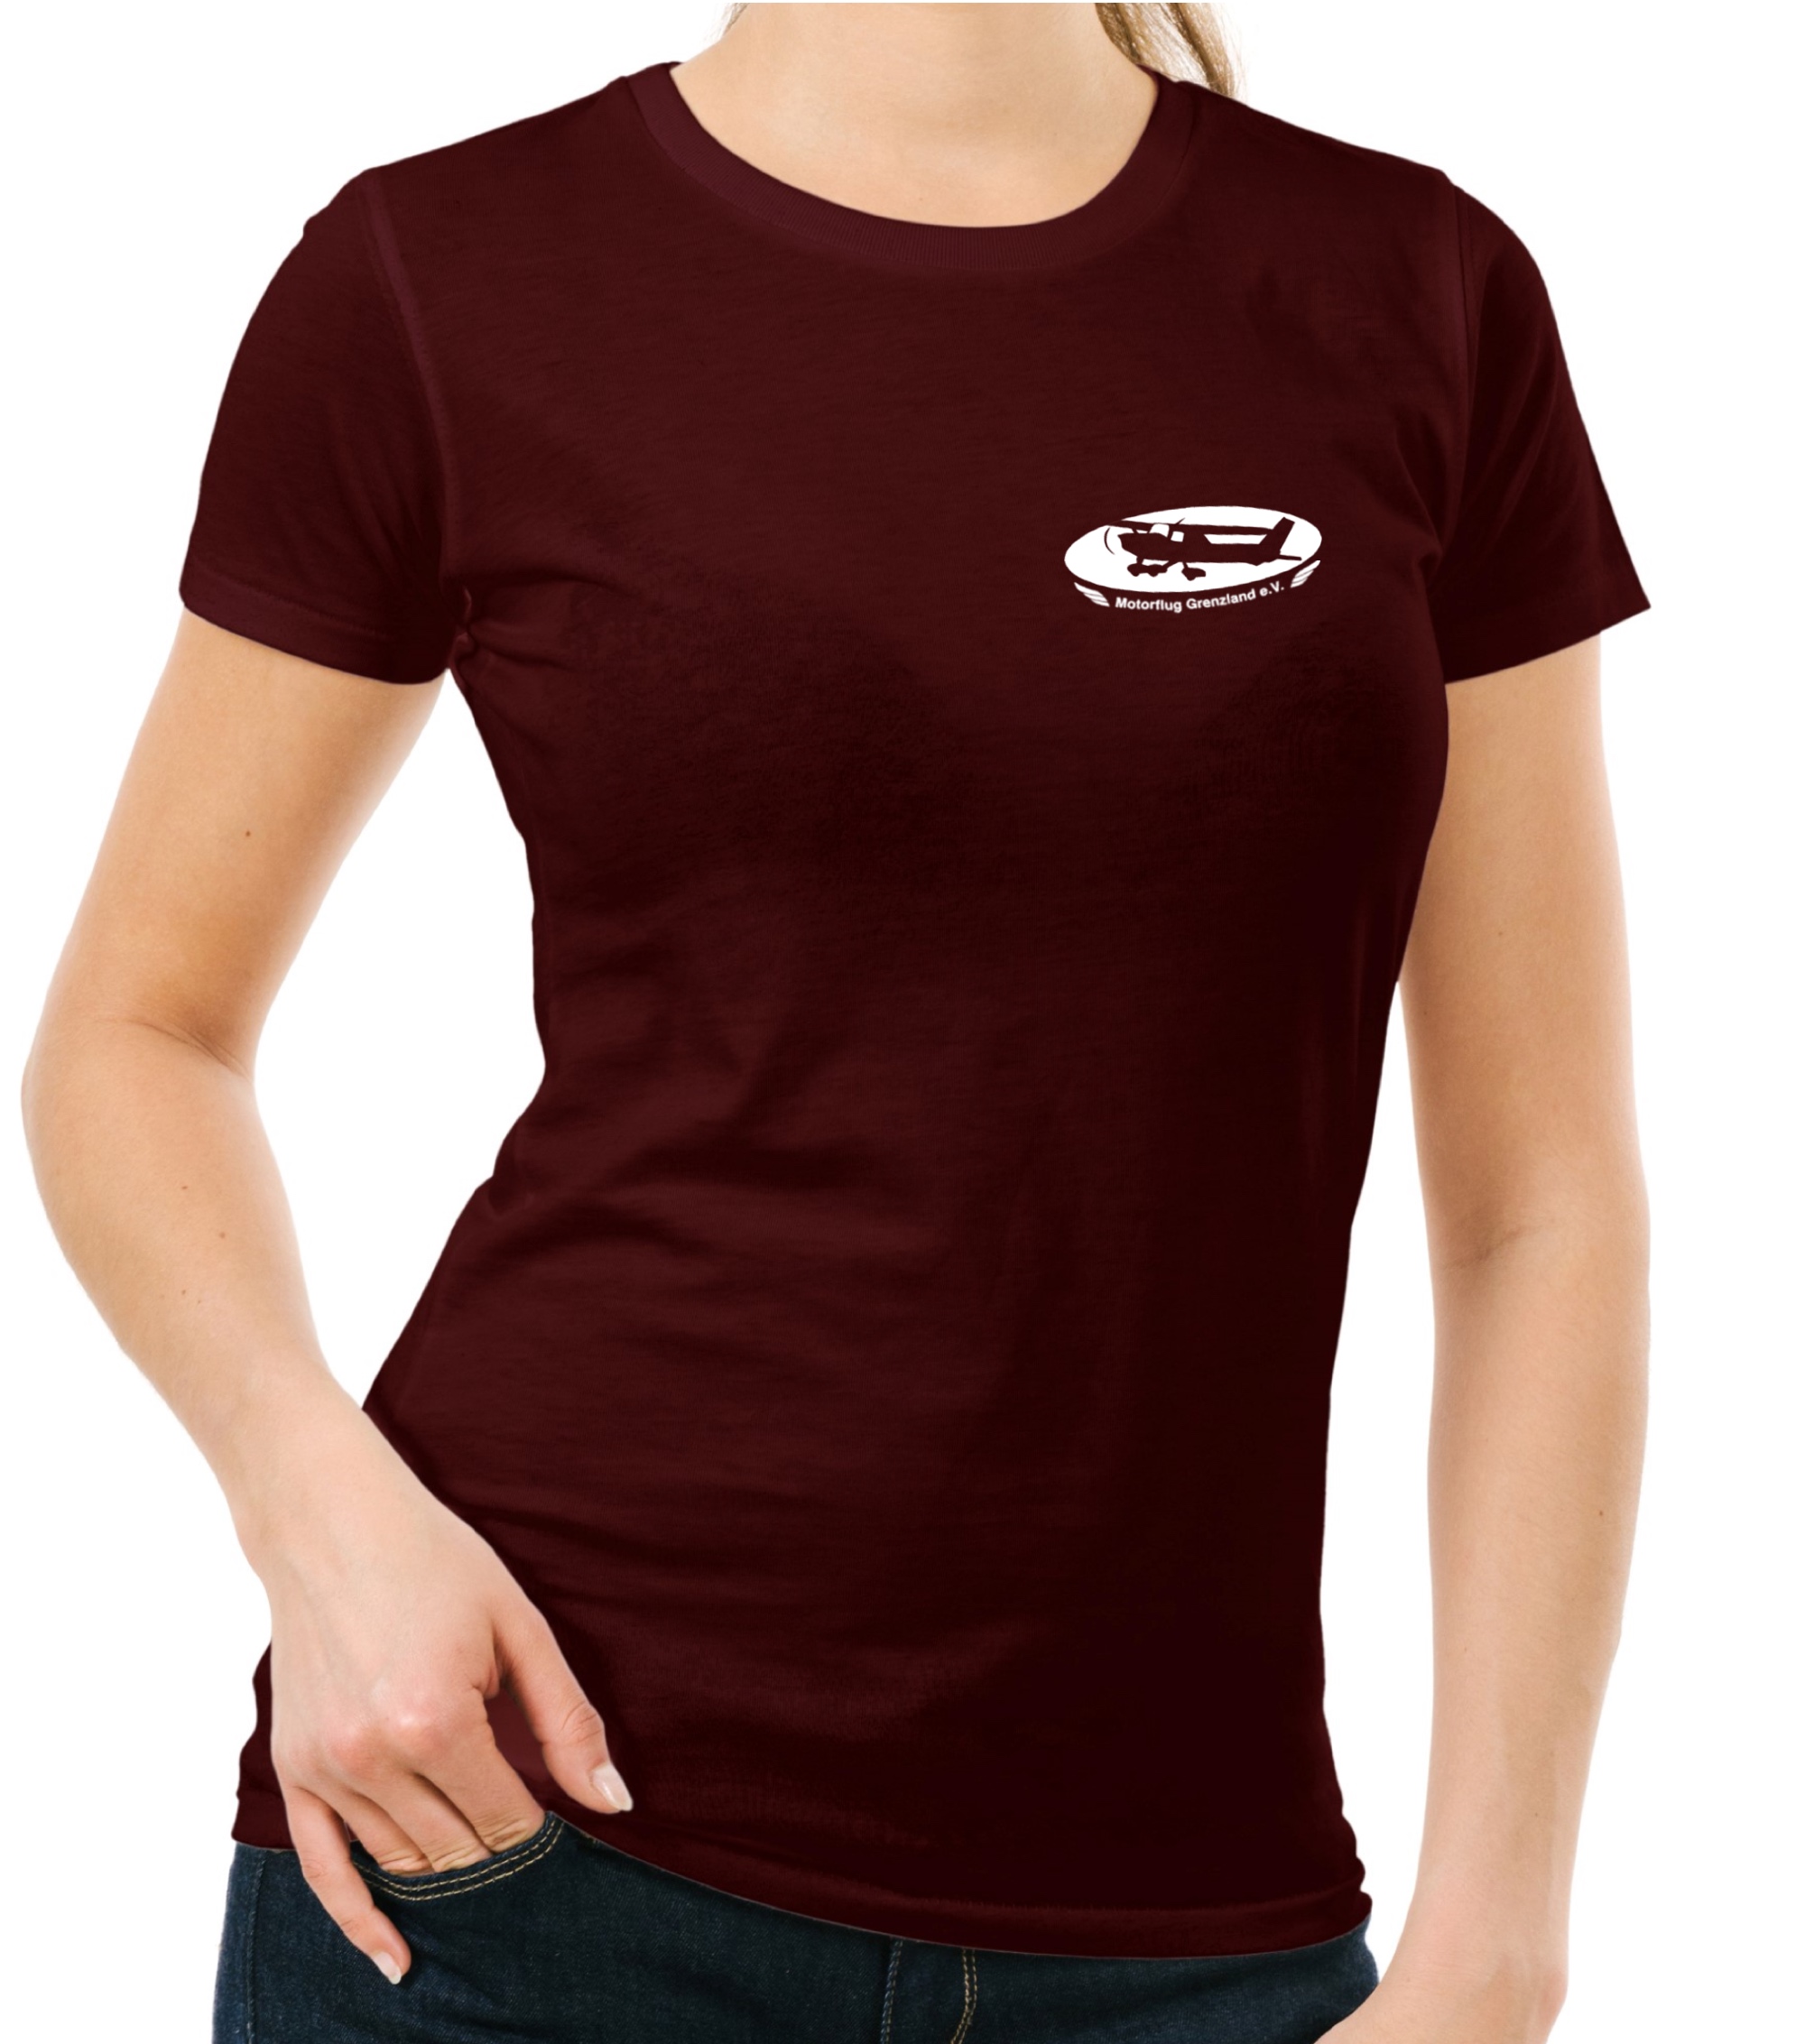 Damen BASIC-T-Shirt MFG Grenzland e.V.